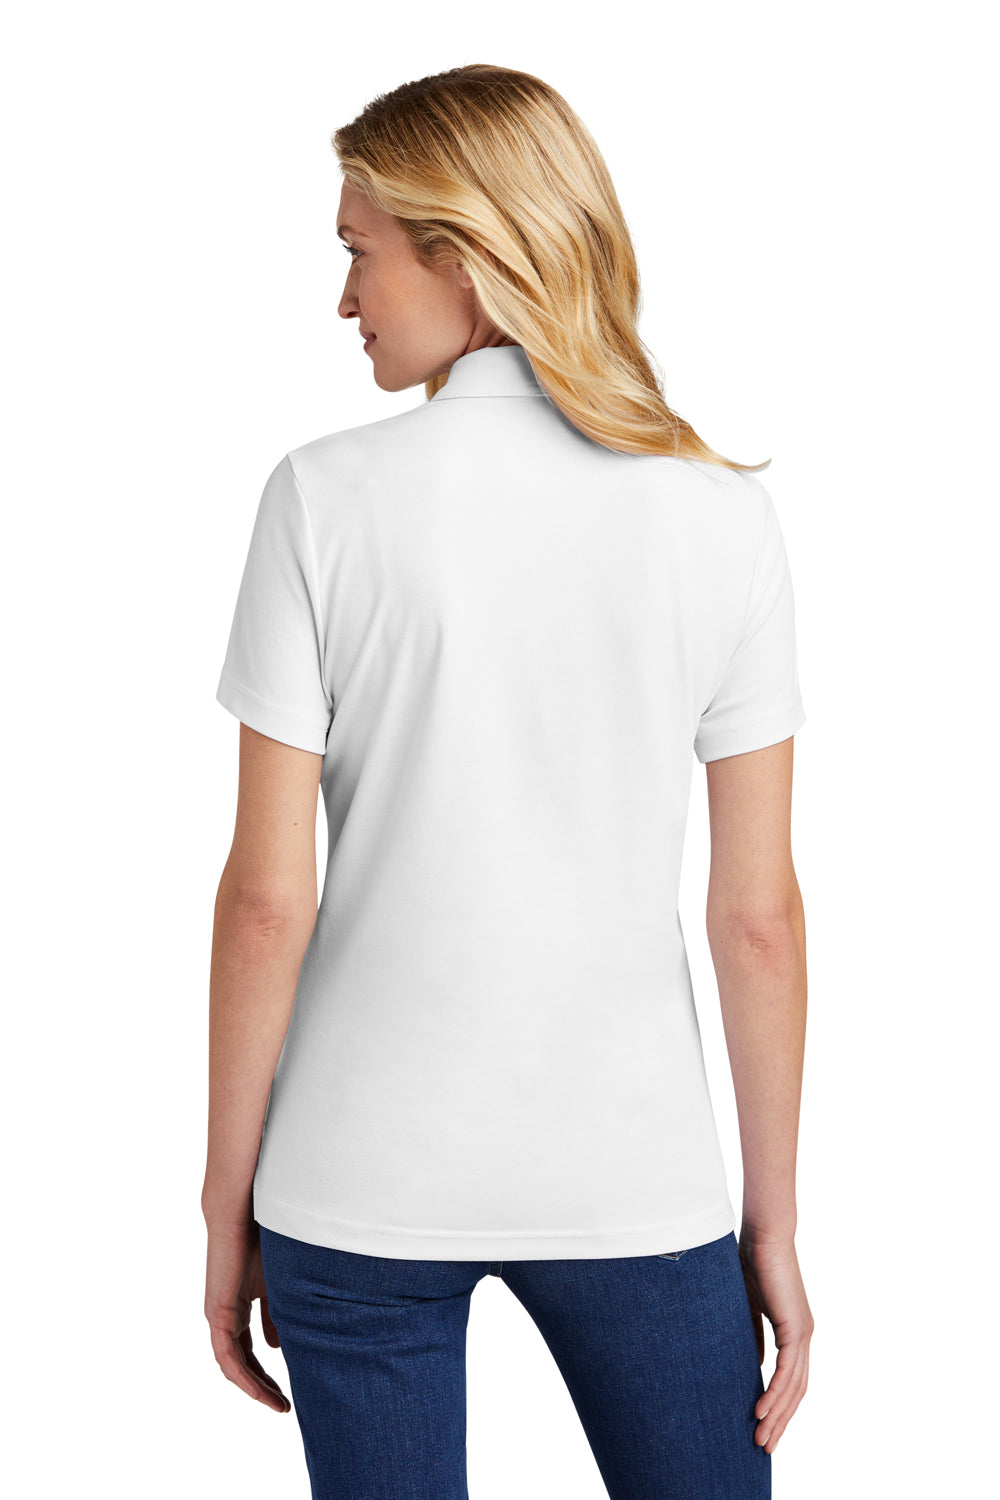 TravisMathew TM1WW001 Womens Oceanside Wrinkle Resistant Short Sleeve Polo Shirt White Model Back